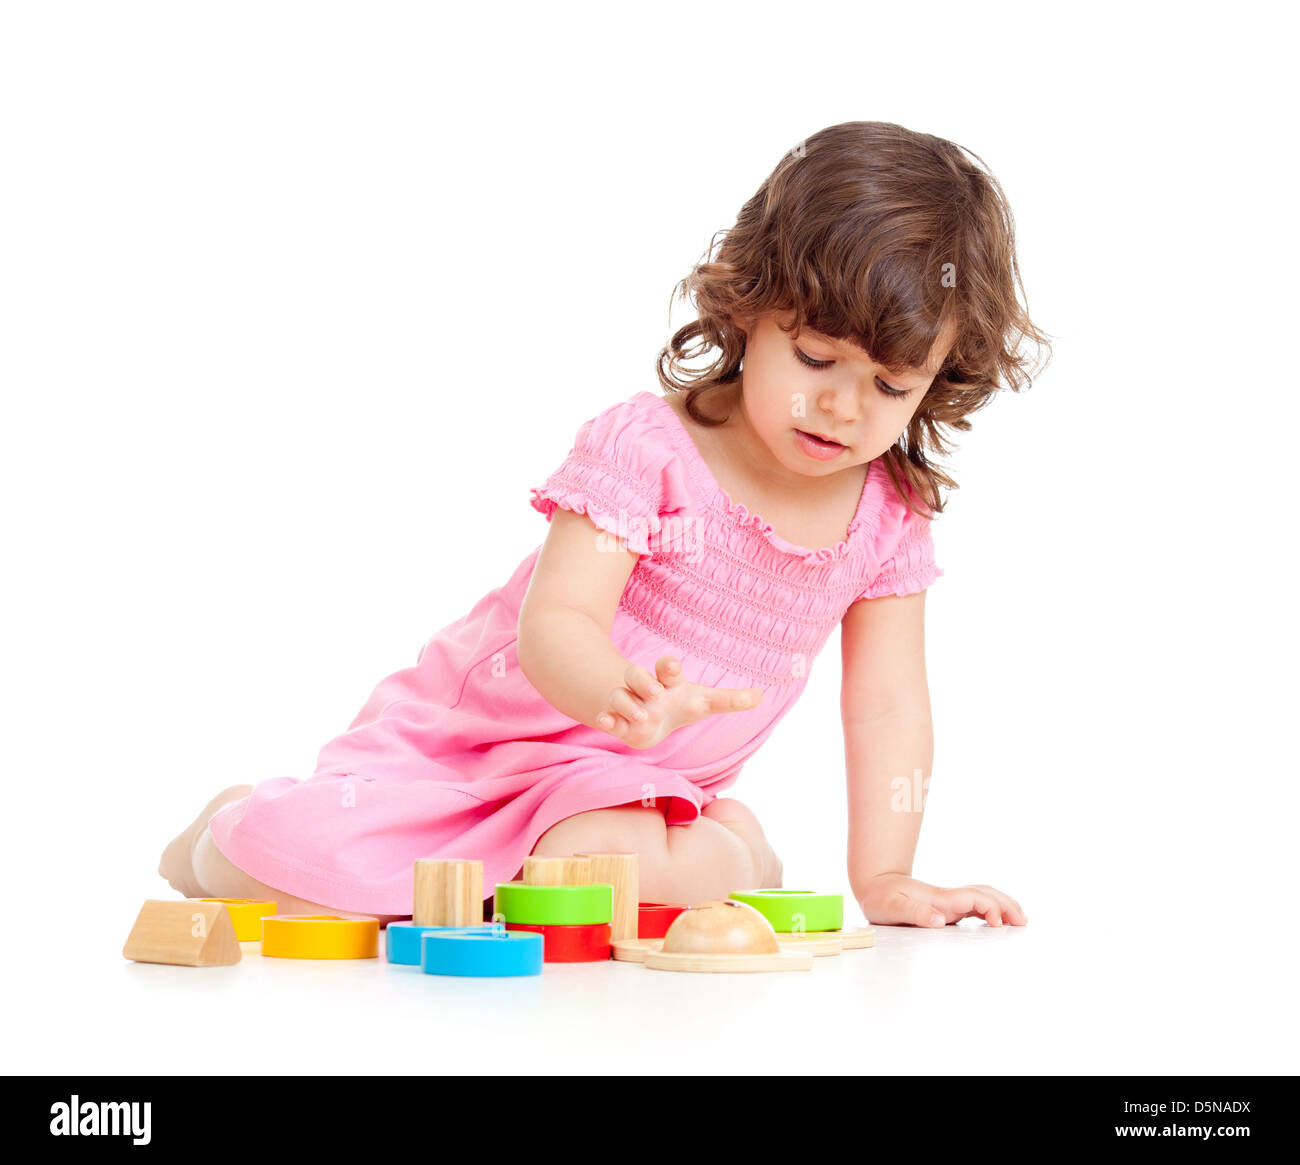 süßes Kind spielen mit bunten Spielzeug, isoliert auf weiß Stockfoto